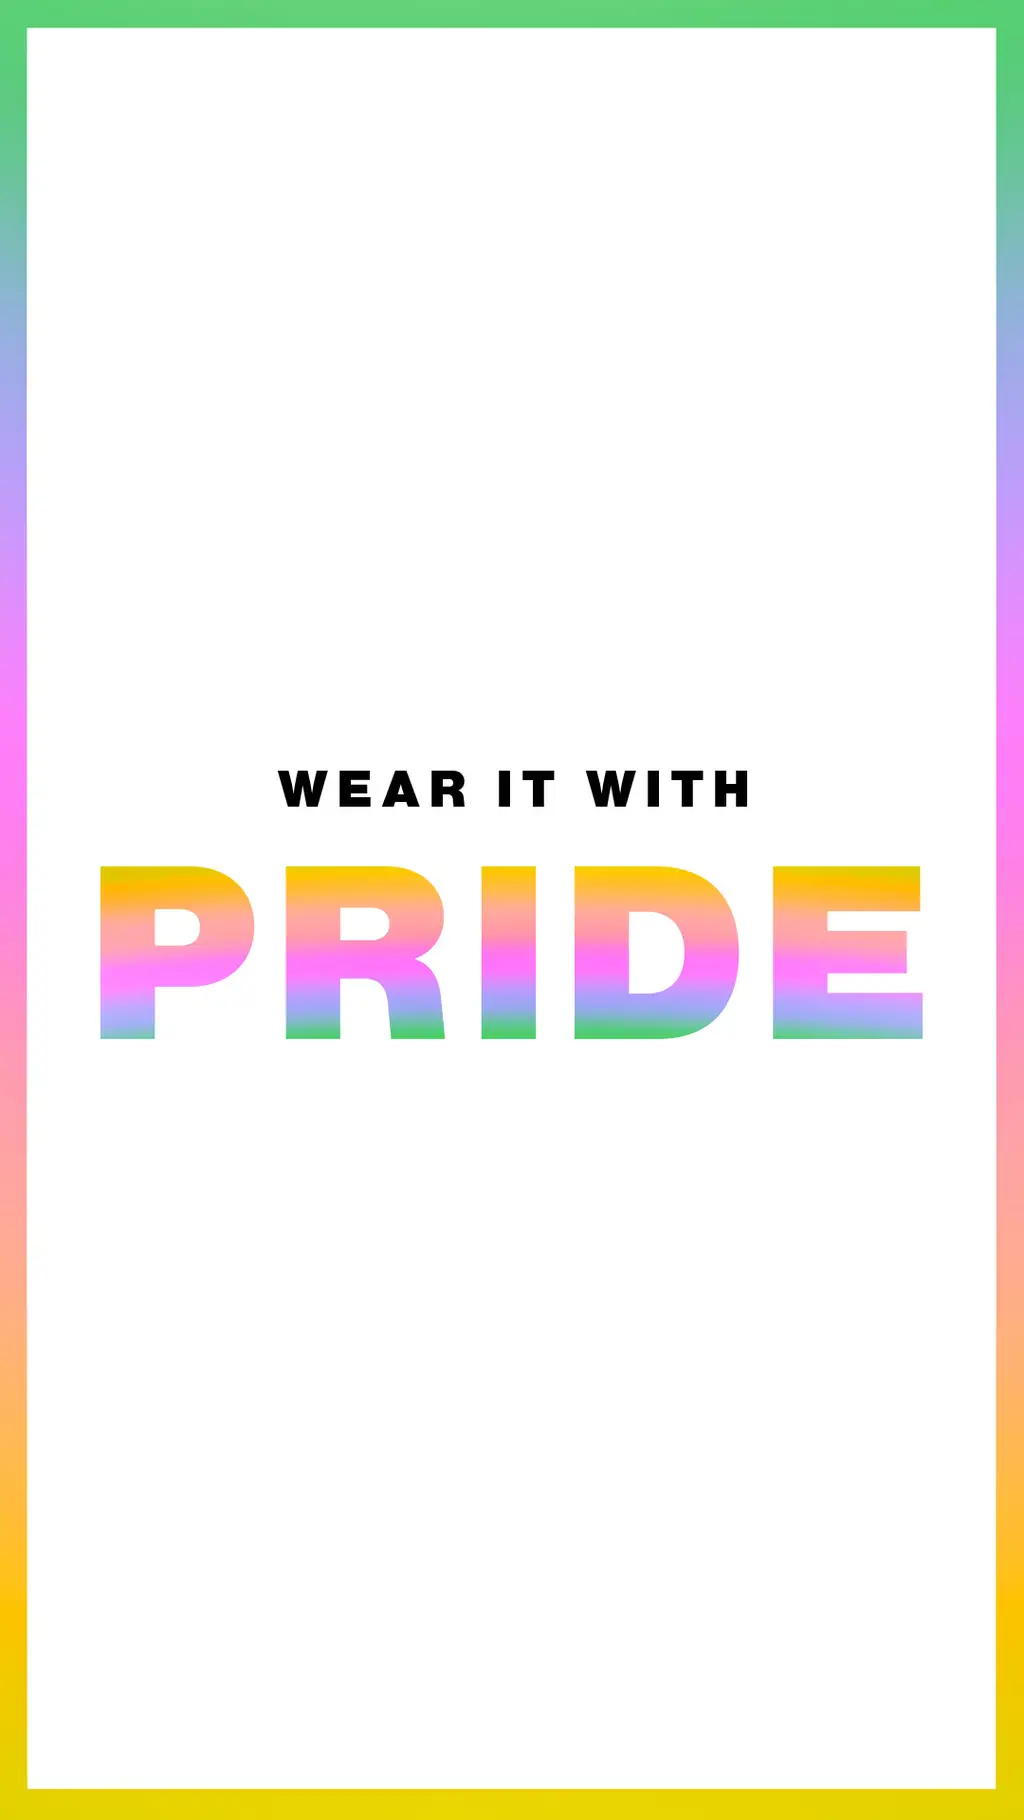 edito-pride-genderless-NEW.jpg